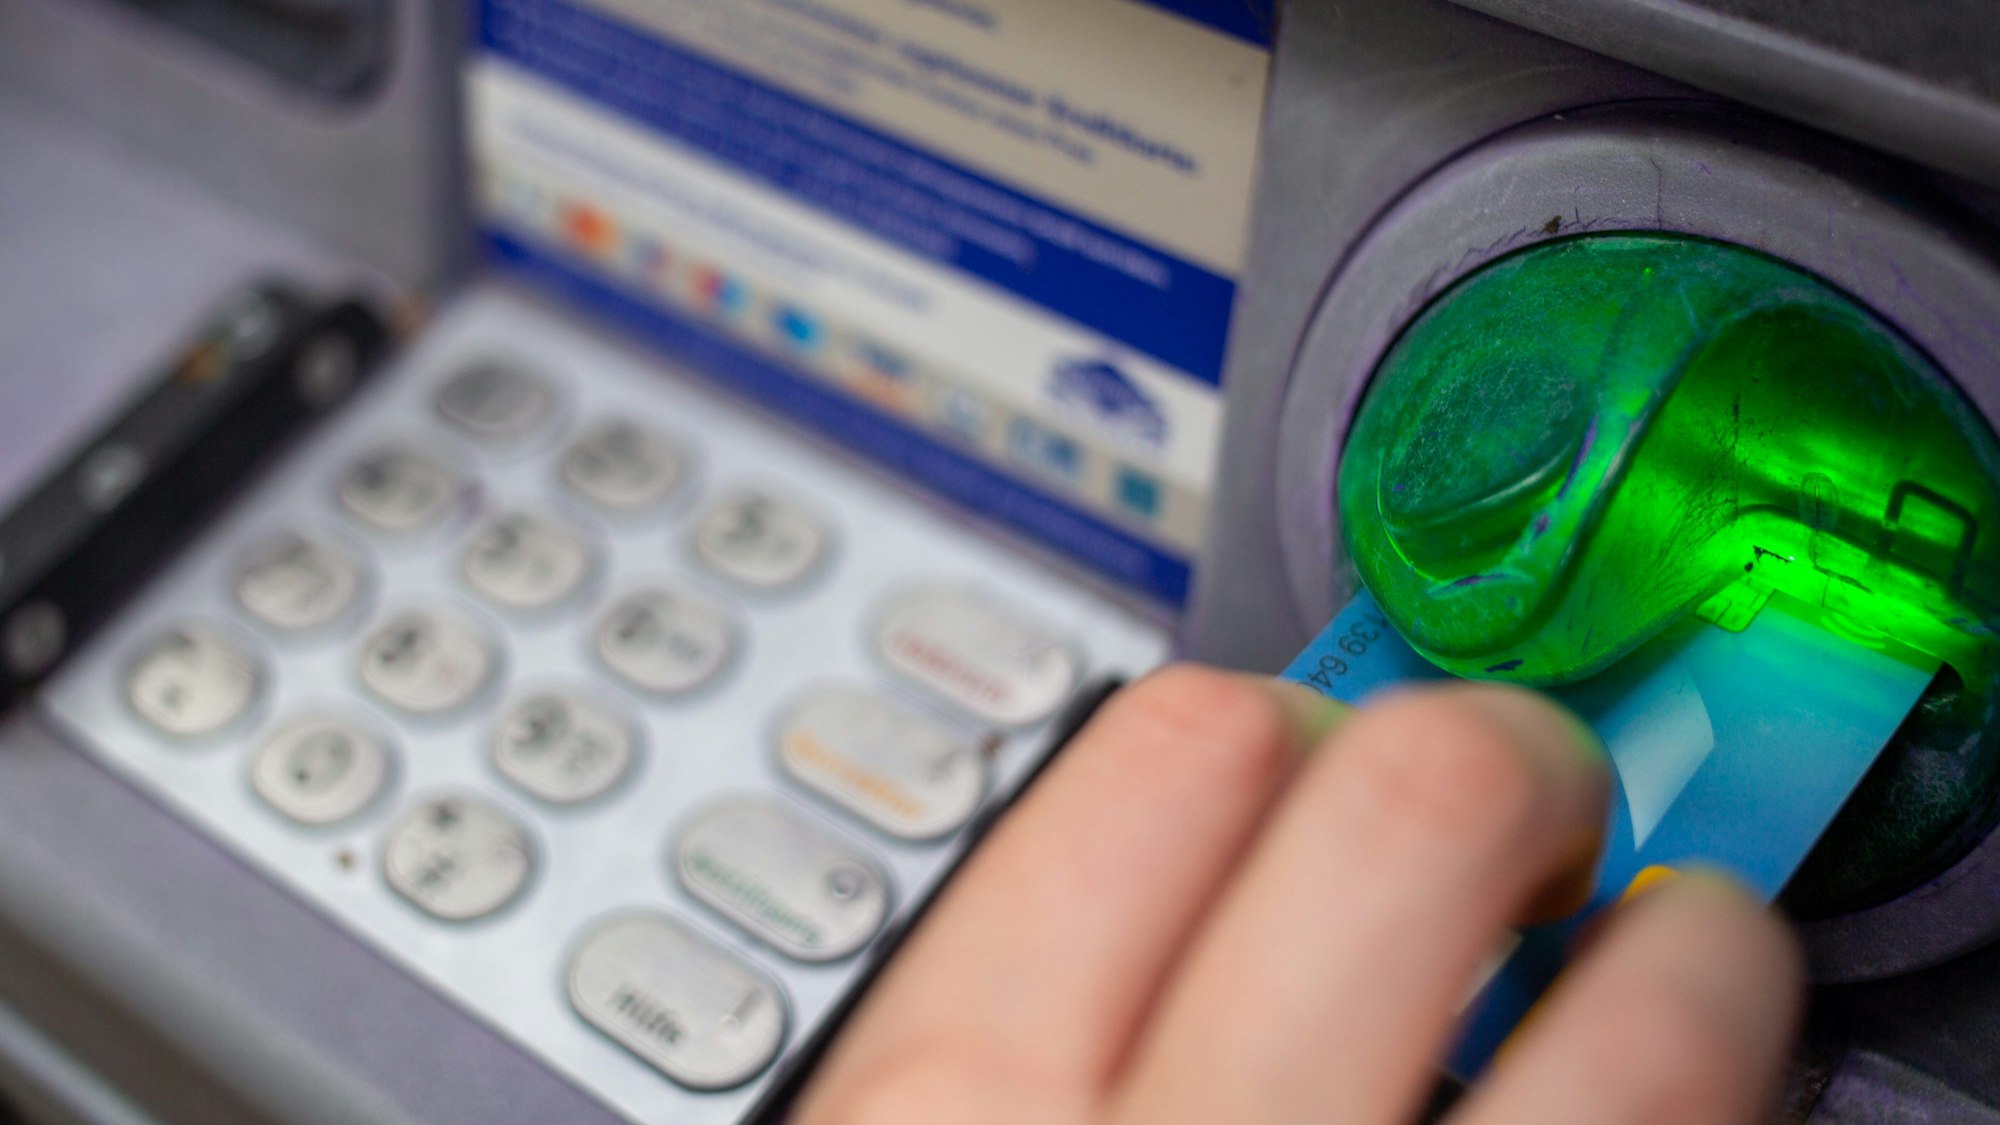 Eine Bankkundin steckt ihre Girokarte in einen Geldautomaten. (Symbolbild)